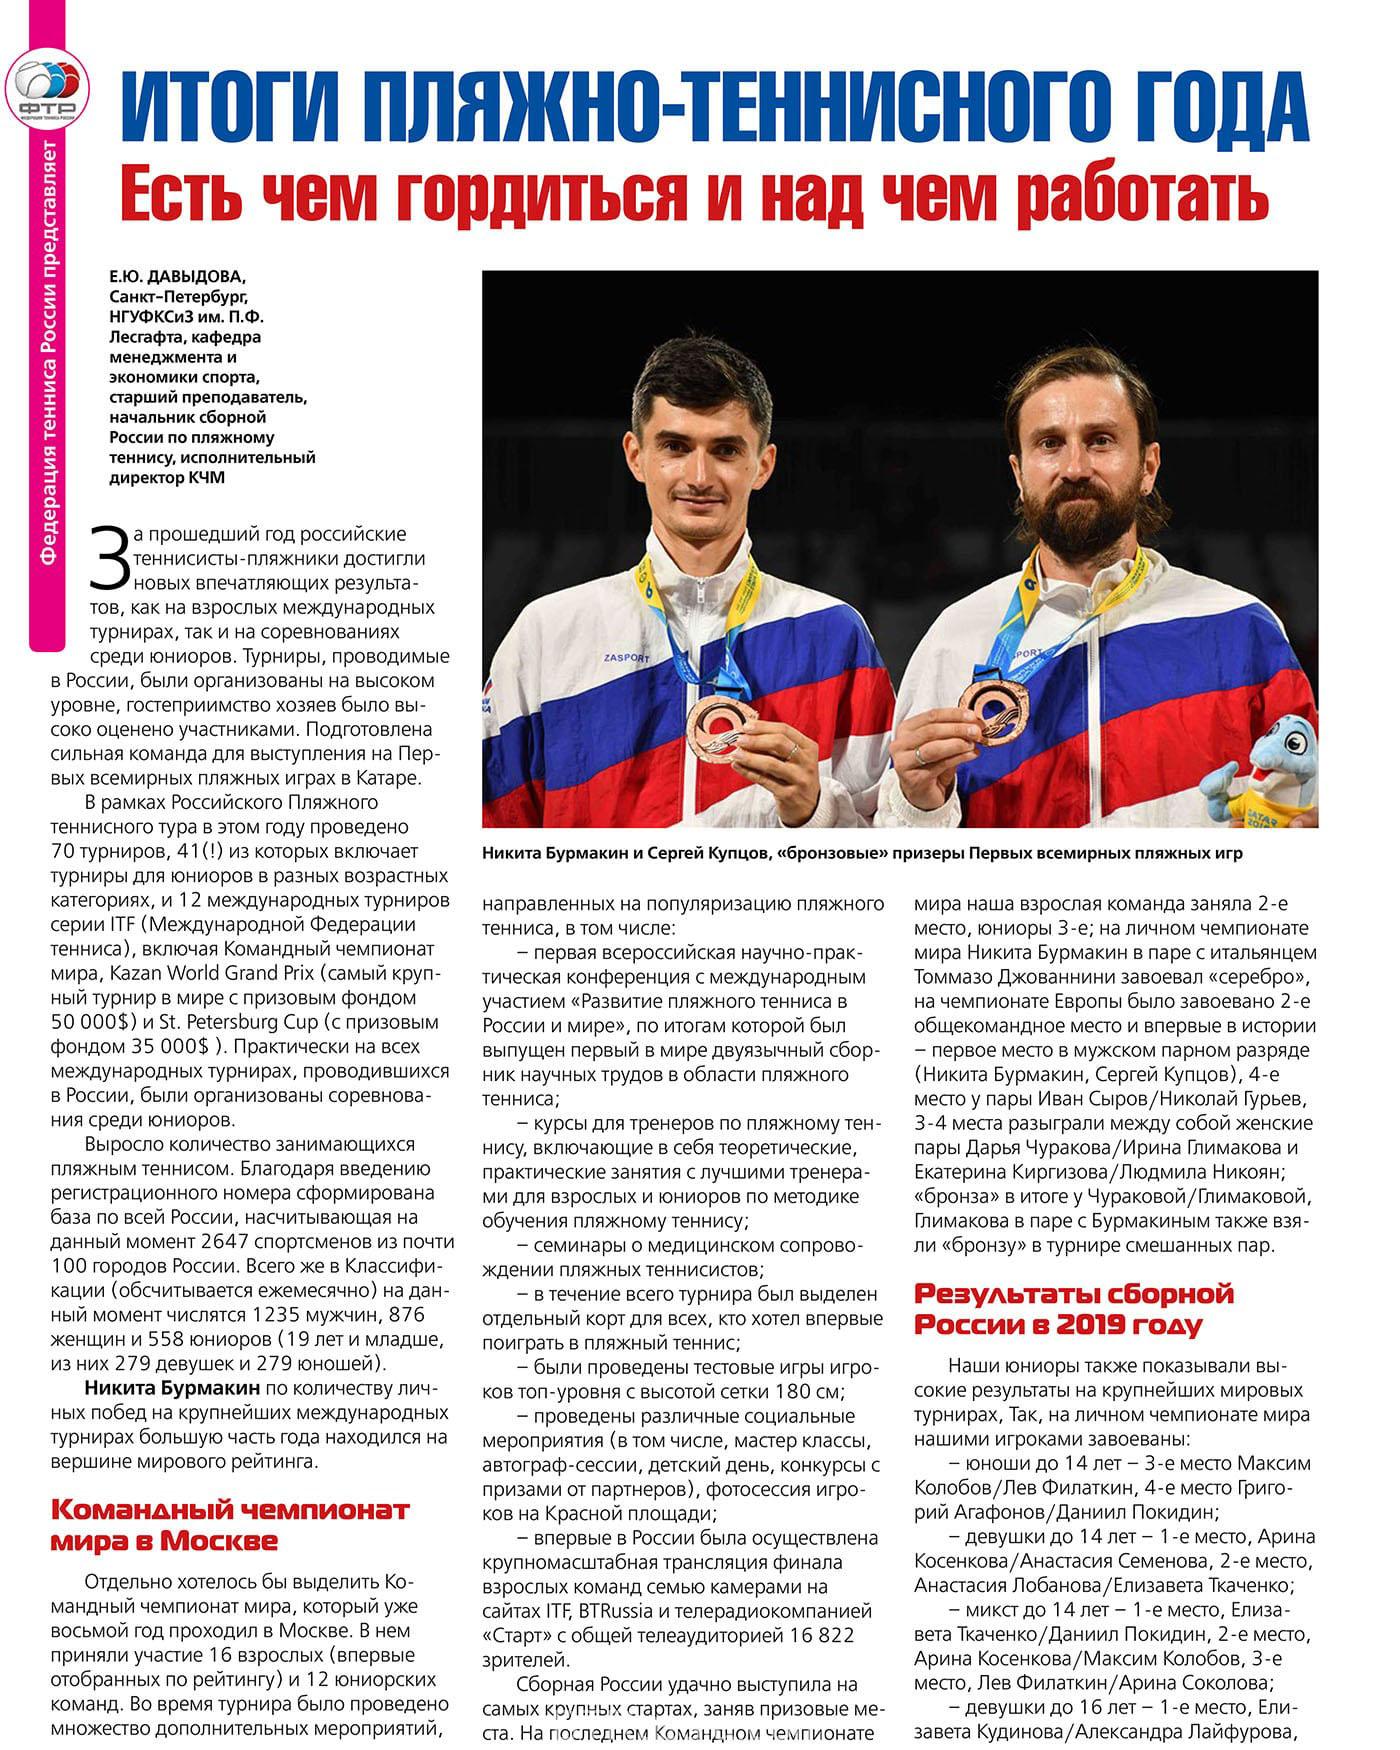 Статья о пляжном теннисе в журнале Теннис в России 2020